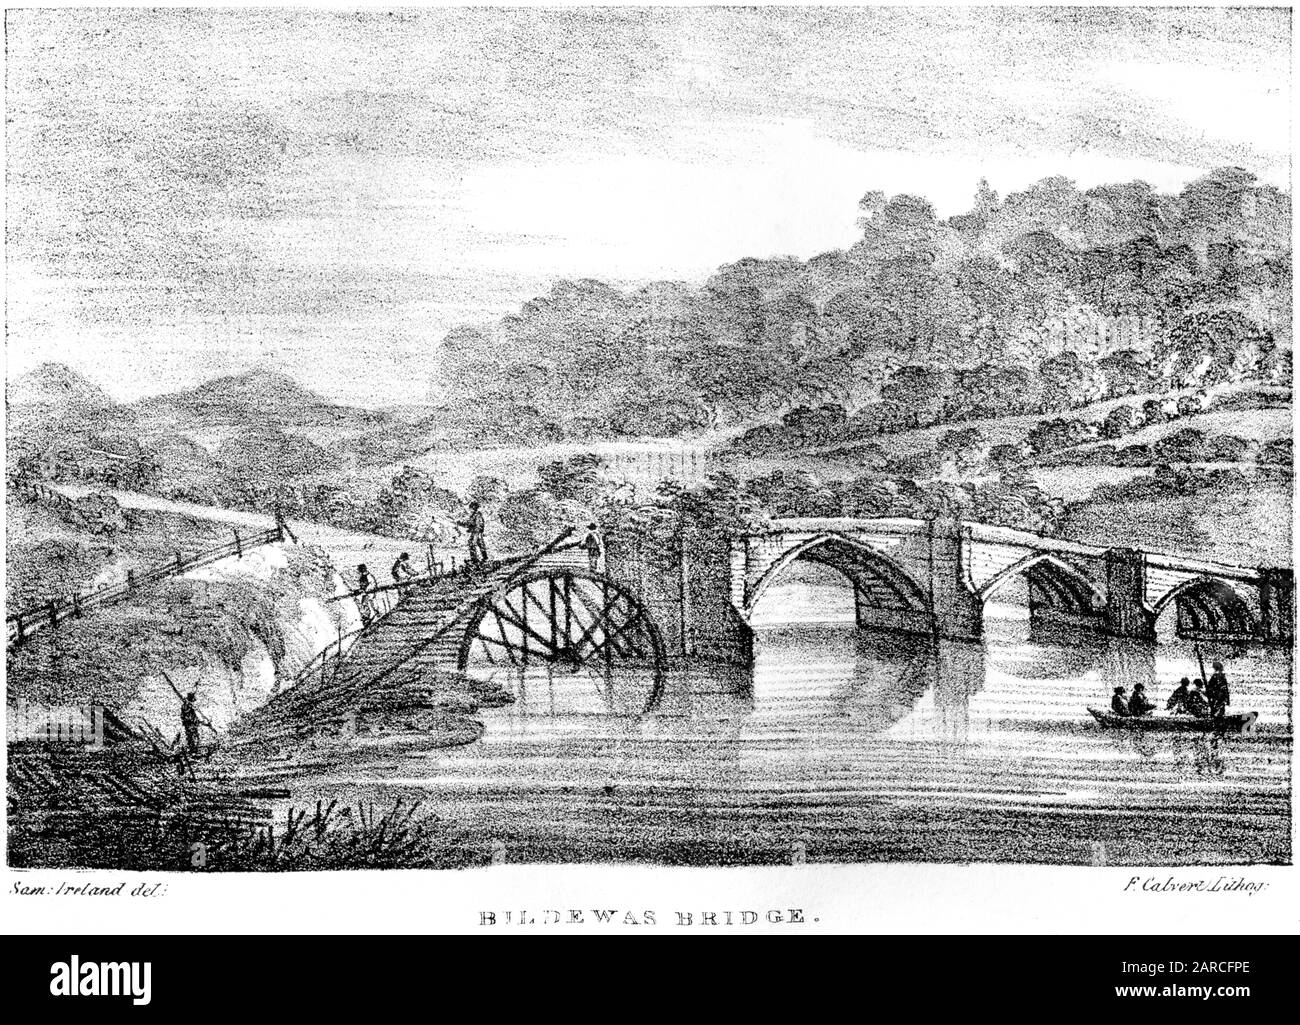 Der in hoher Auflösung gescannte lithograph von Bildewas (Buildwas) Bridge aus einem Buch, das im Jahre 1824 gedruckt wurde. Es wird angenommen, dass dieses Bild frei von allen Urheberrechten ist. Stockfoto